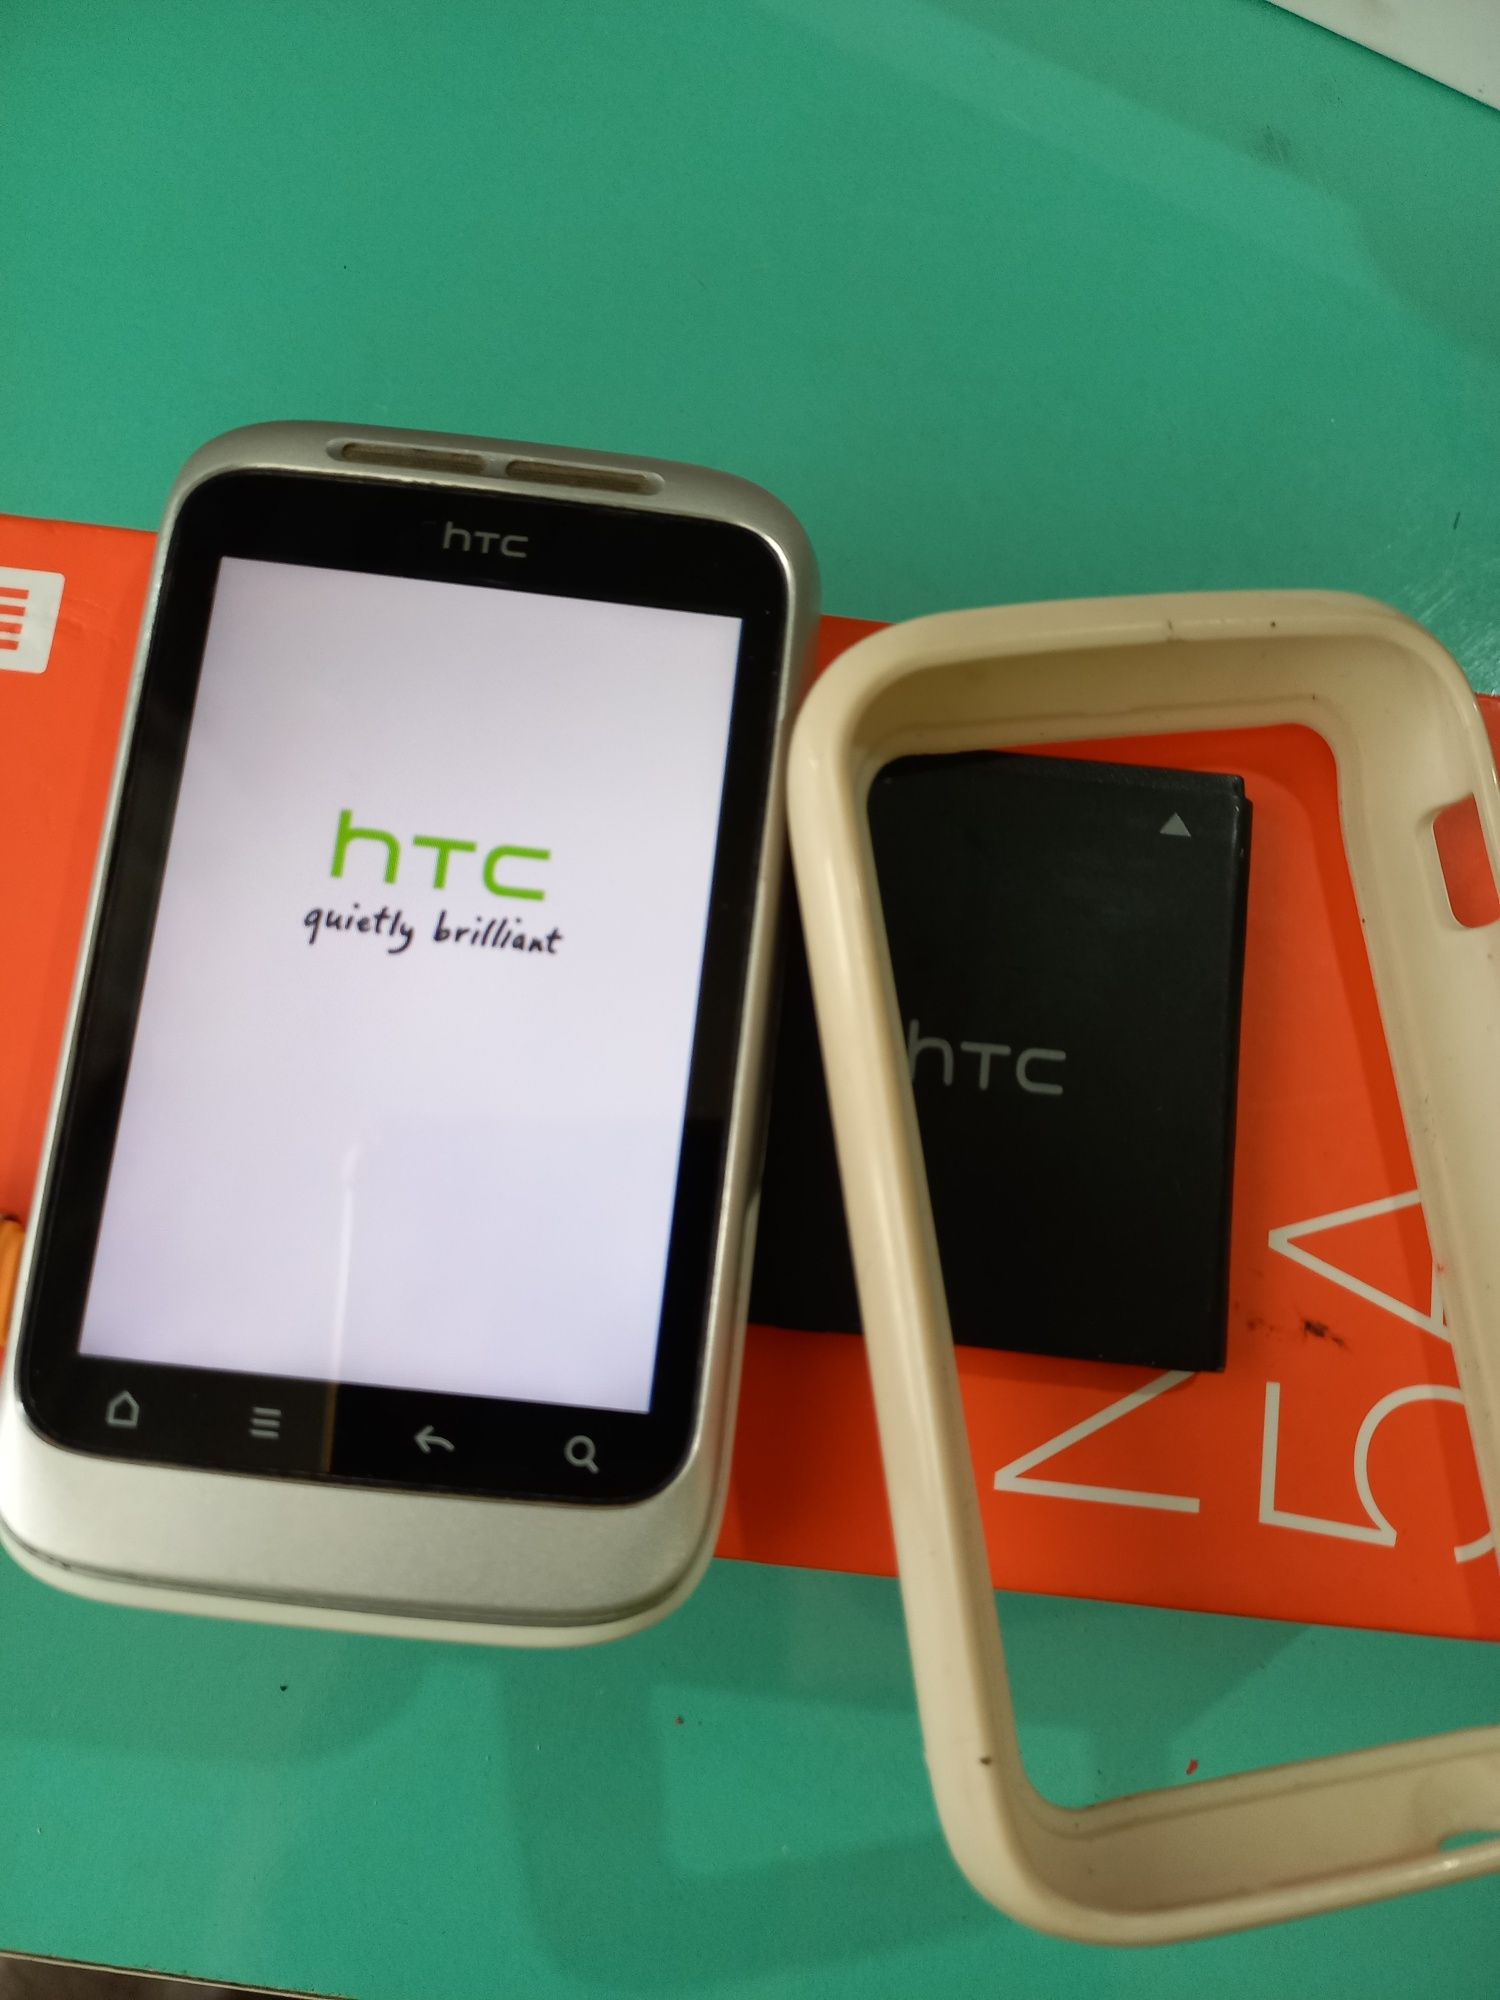 Сенсорный телефон HTC.